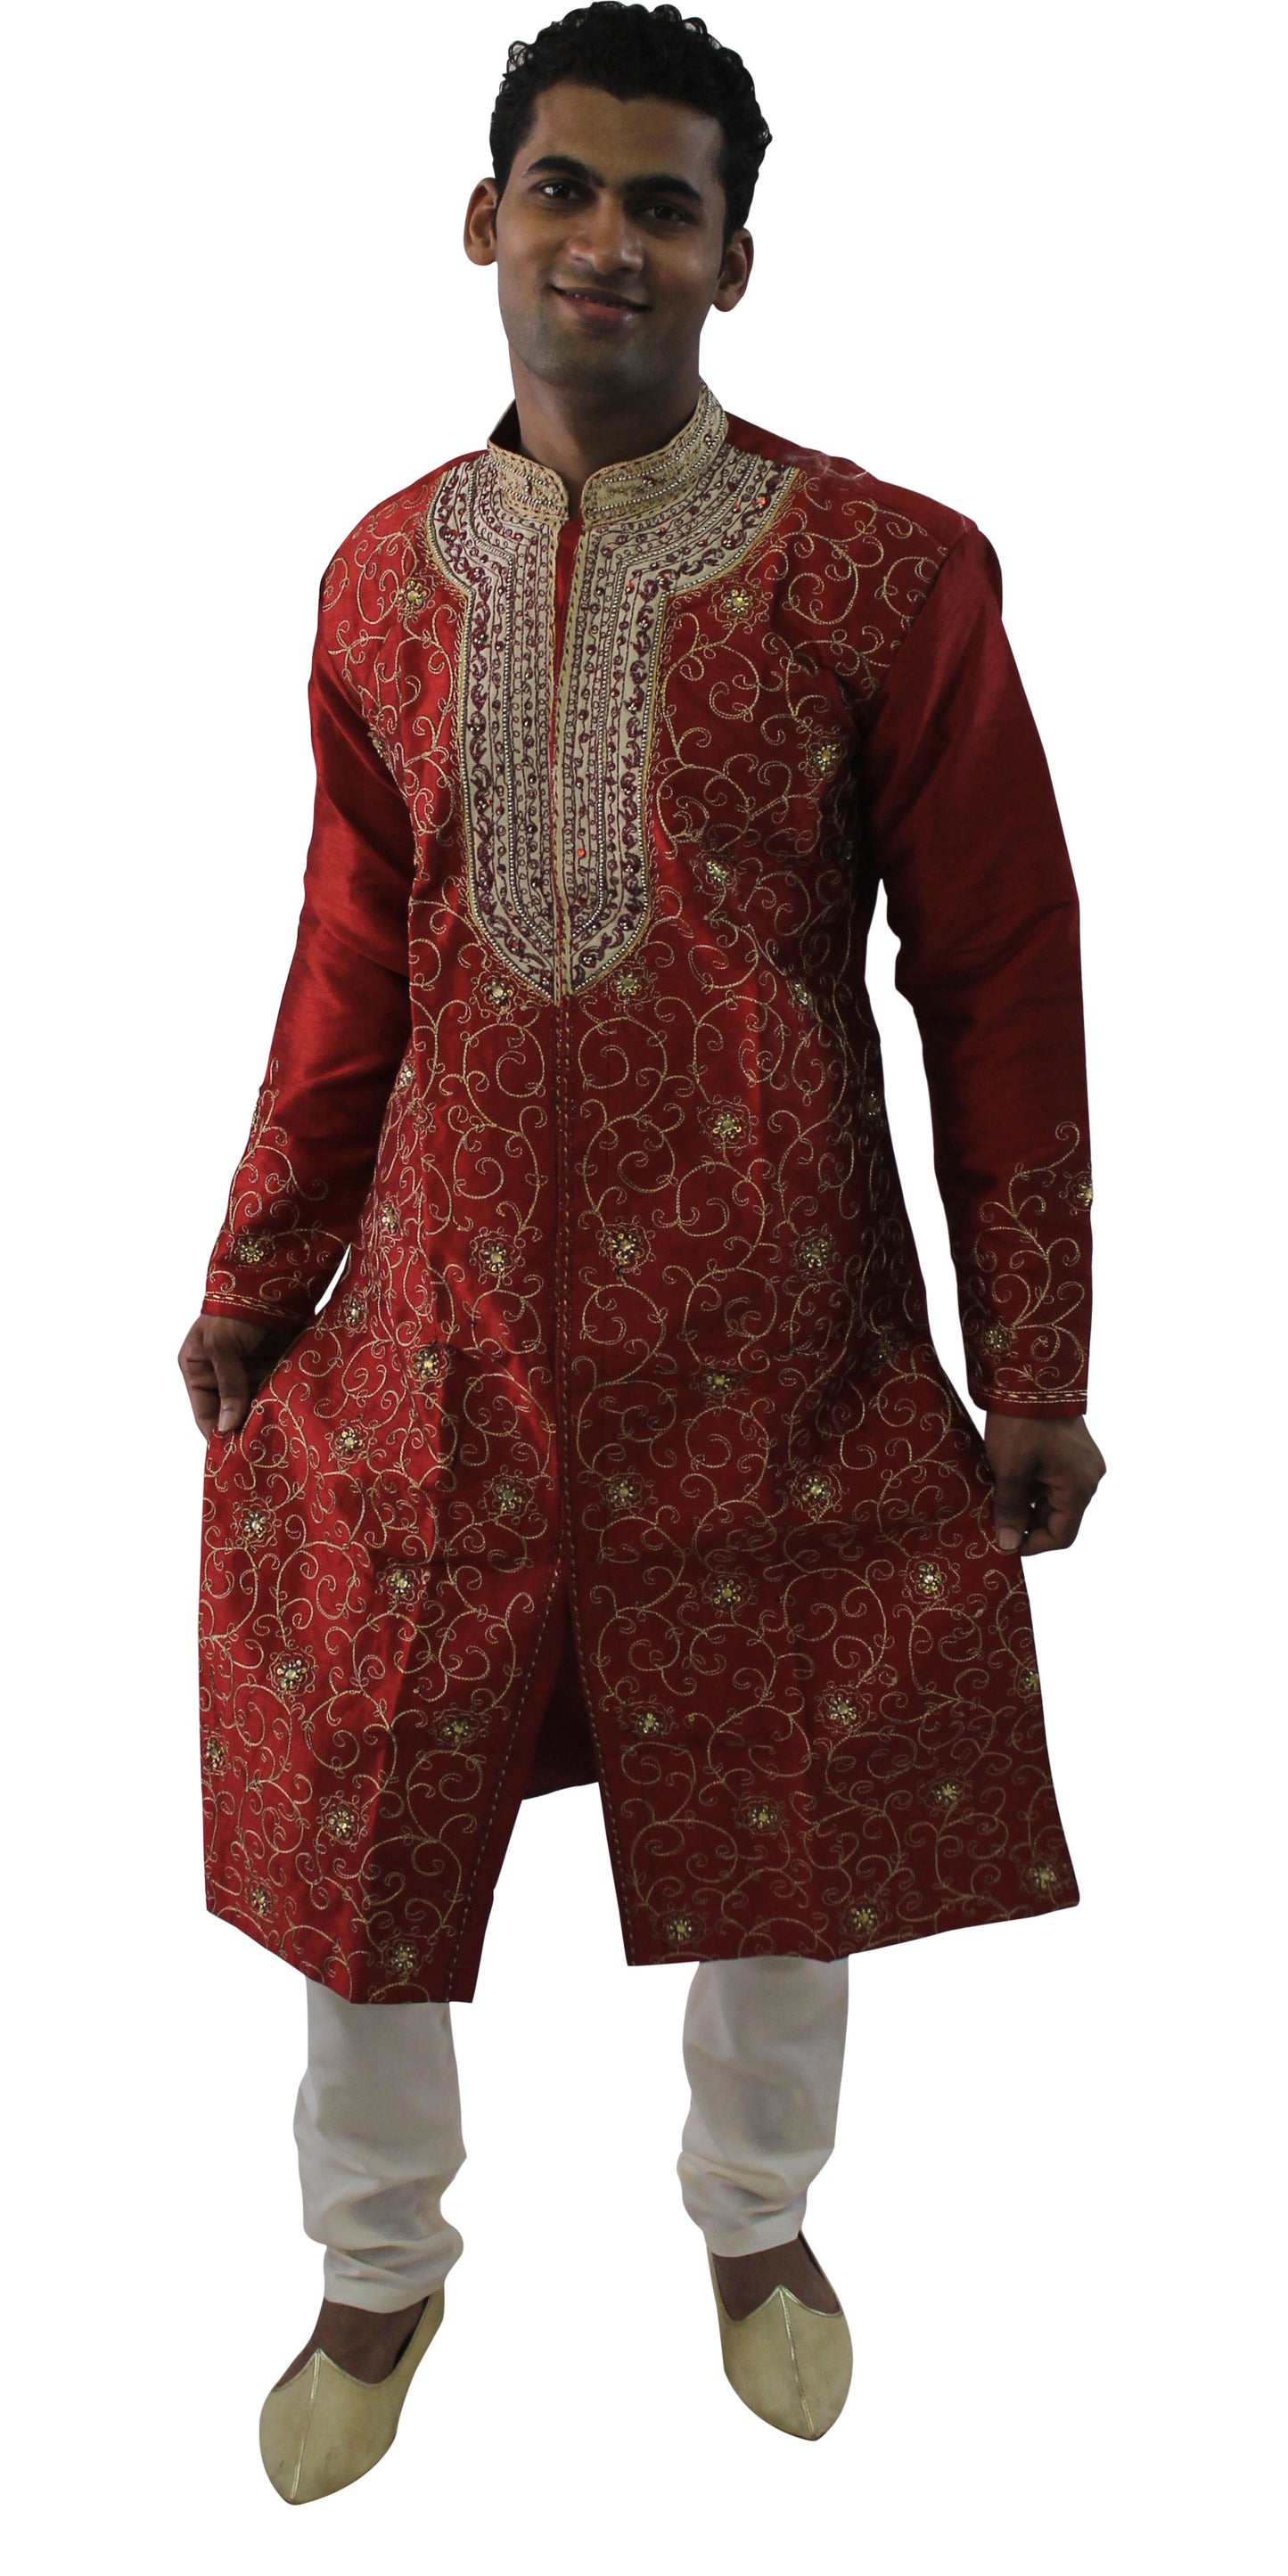 Designer Burgundy Men’s Sherwani with Matching Shawl Plus Sizes up to 8XL in Stock